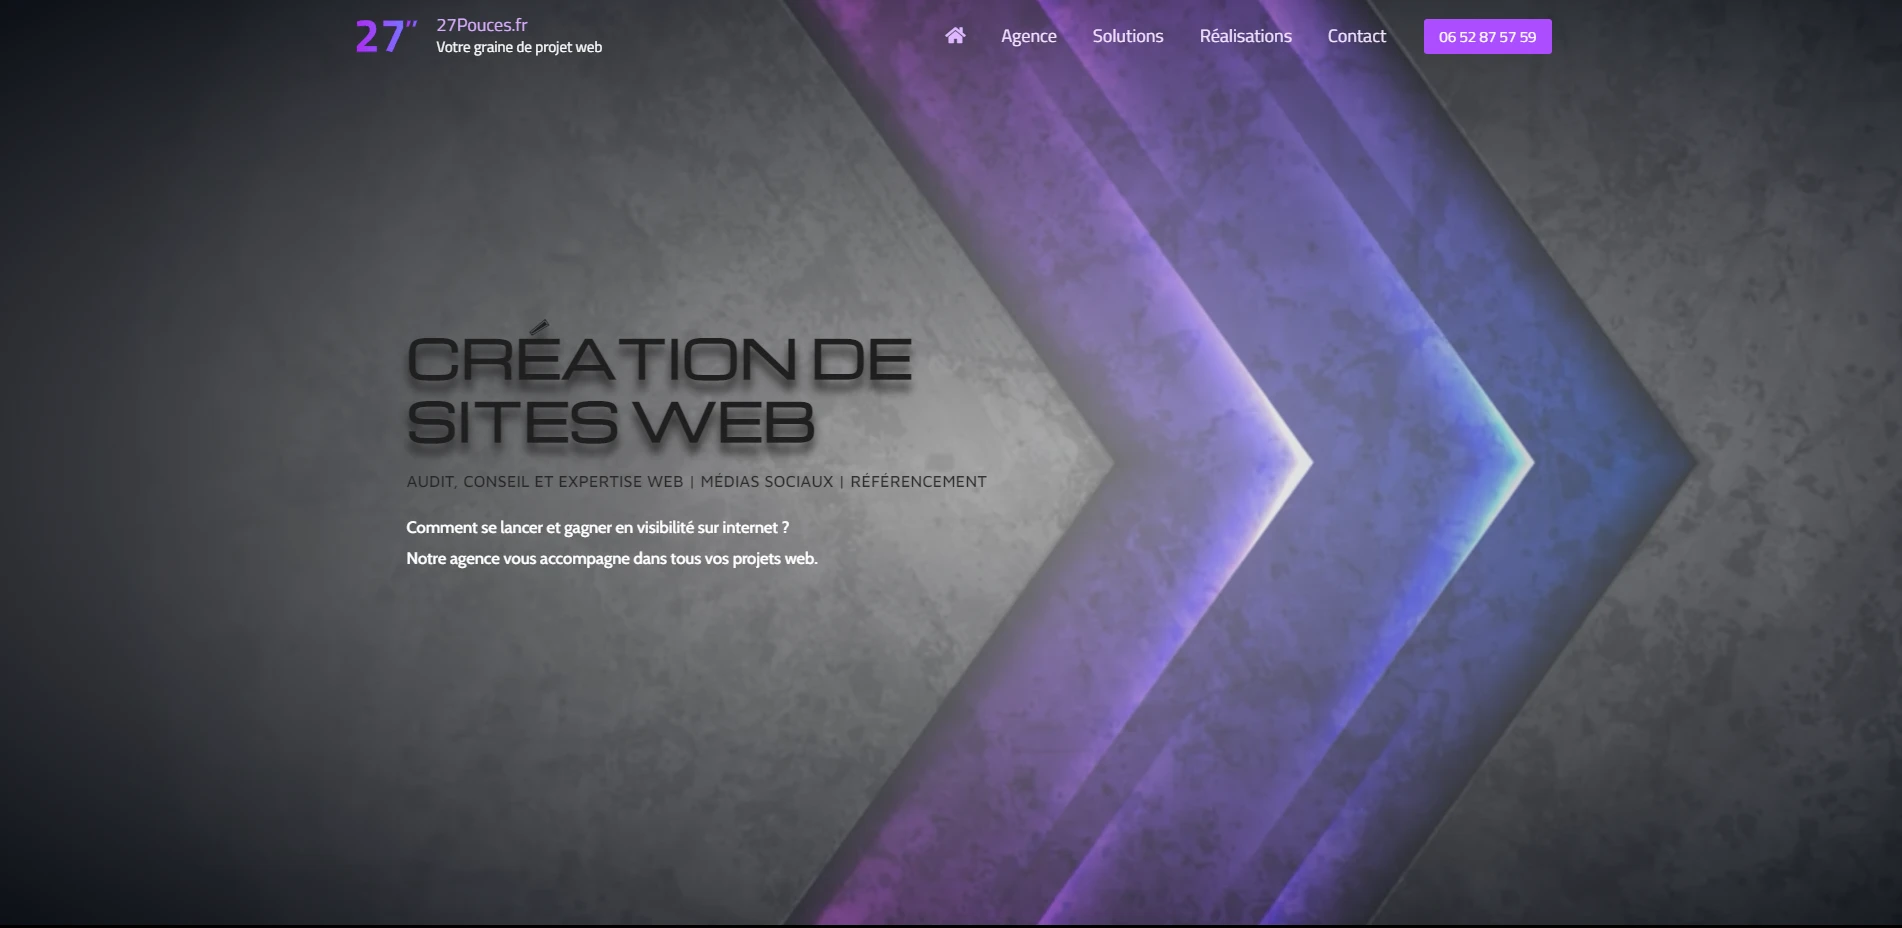 Illustration de la page d'accueil du site web 27pouces.fr